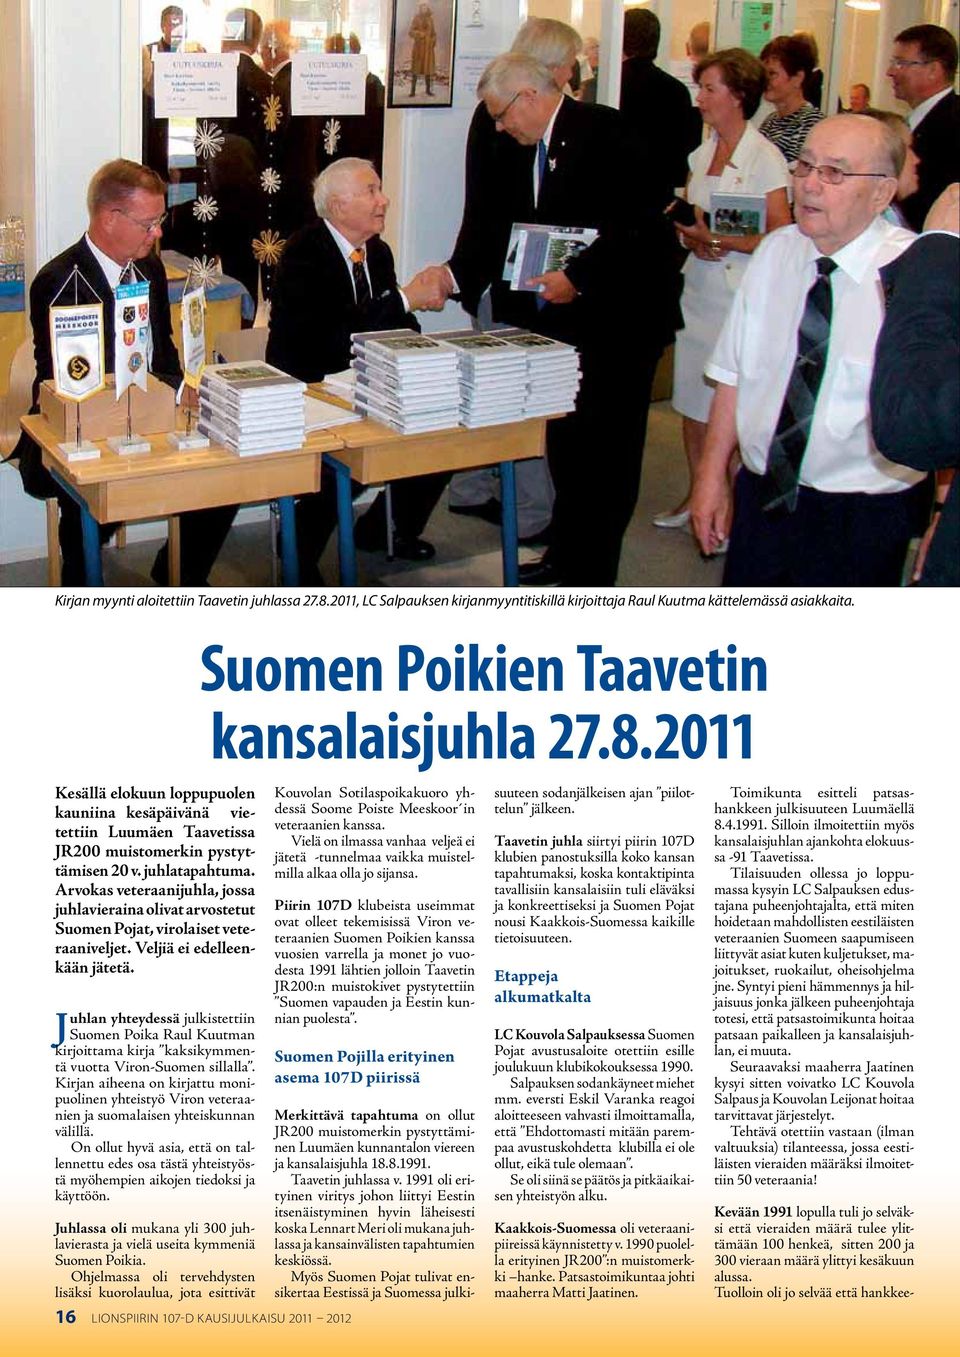 Juhlan yhteydessä julkistettiin Suomen Poika Raul Kuutman kirjoittama kirja kaksikymmentä vuotta Viron-Suomen sillalla.